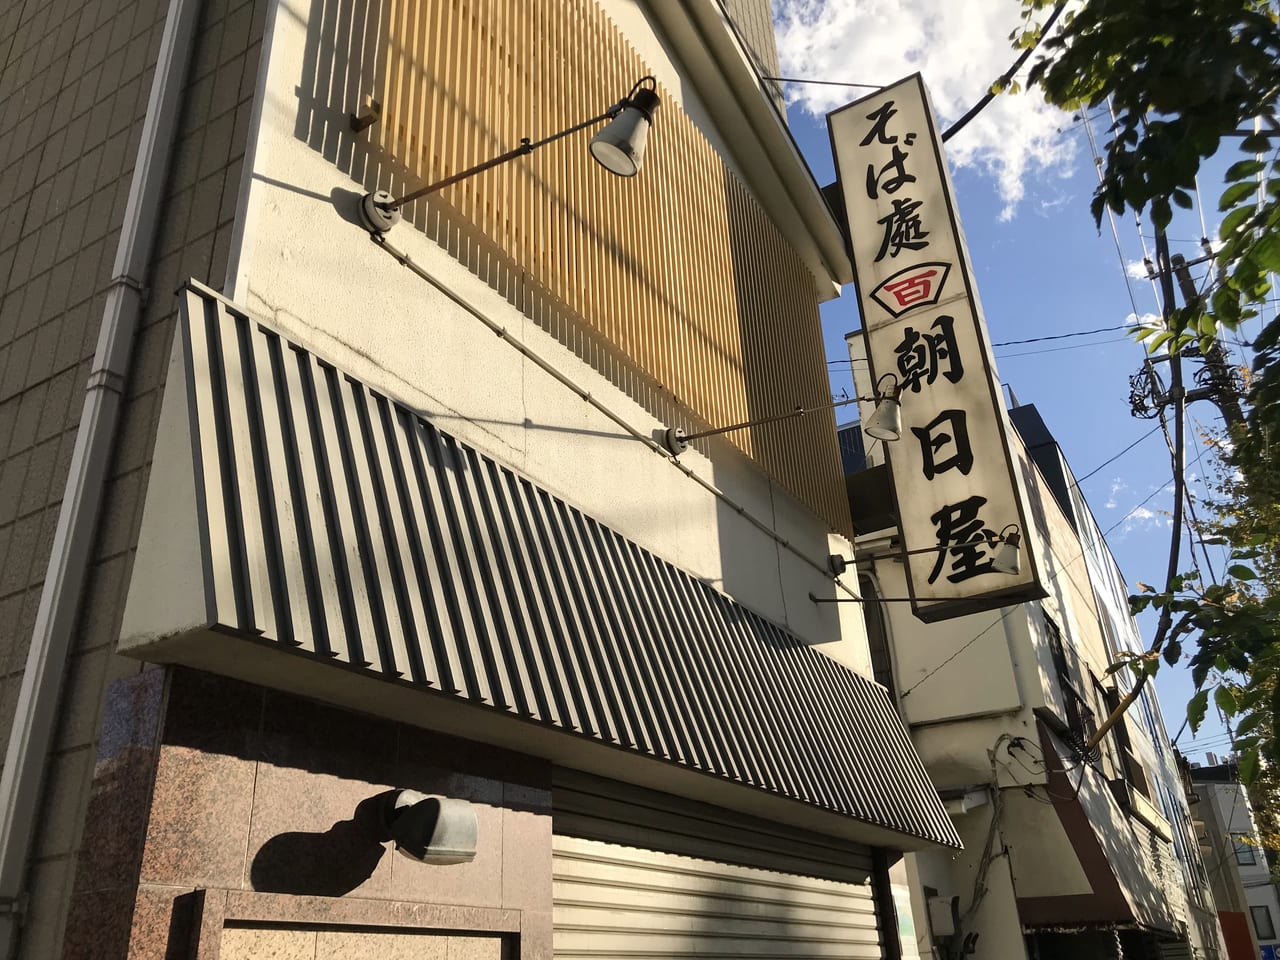 世田谷区駒沢手打ちそば朝日屋が60年の歴史に幕を下ろし2021年10月28日に閉店してしまいました。